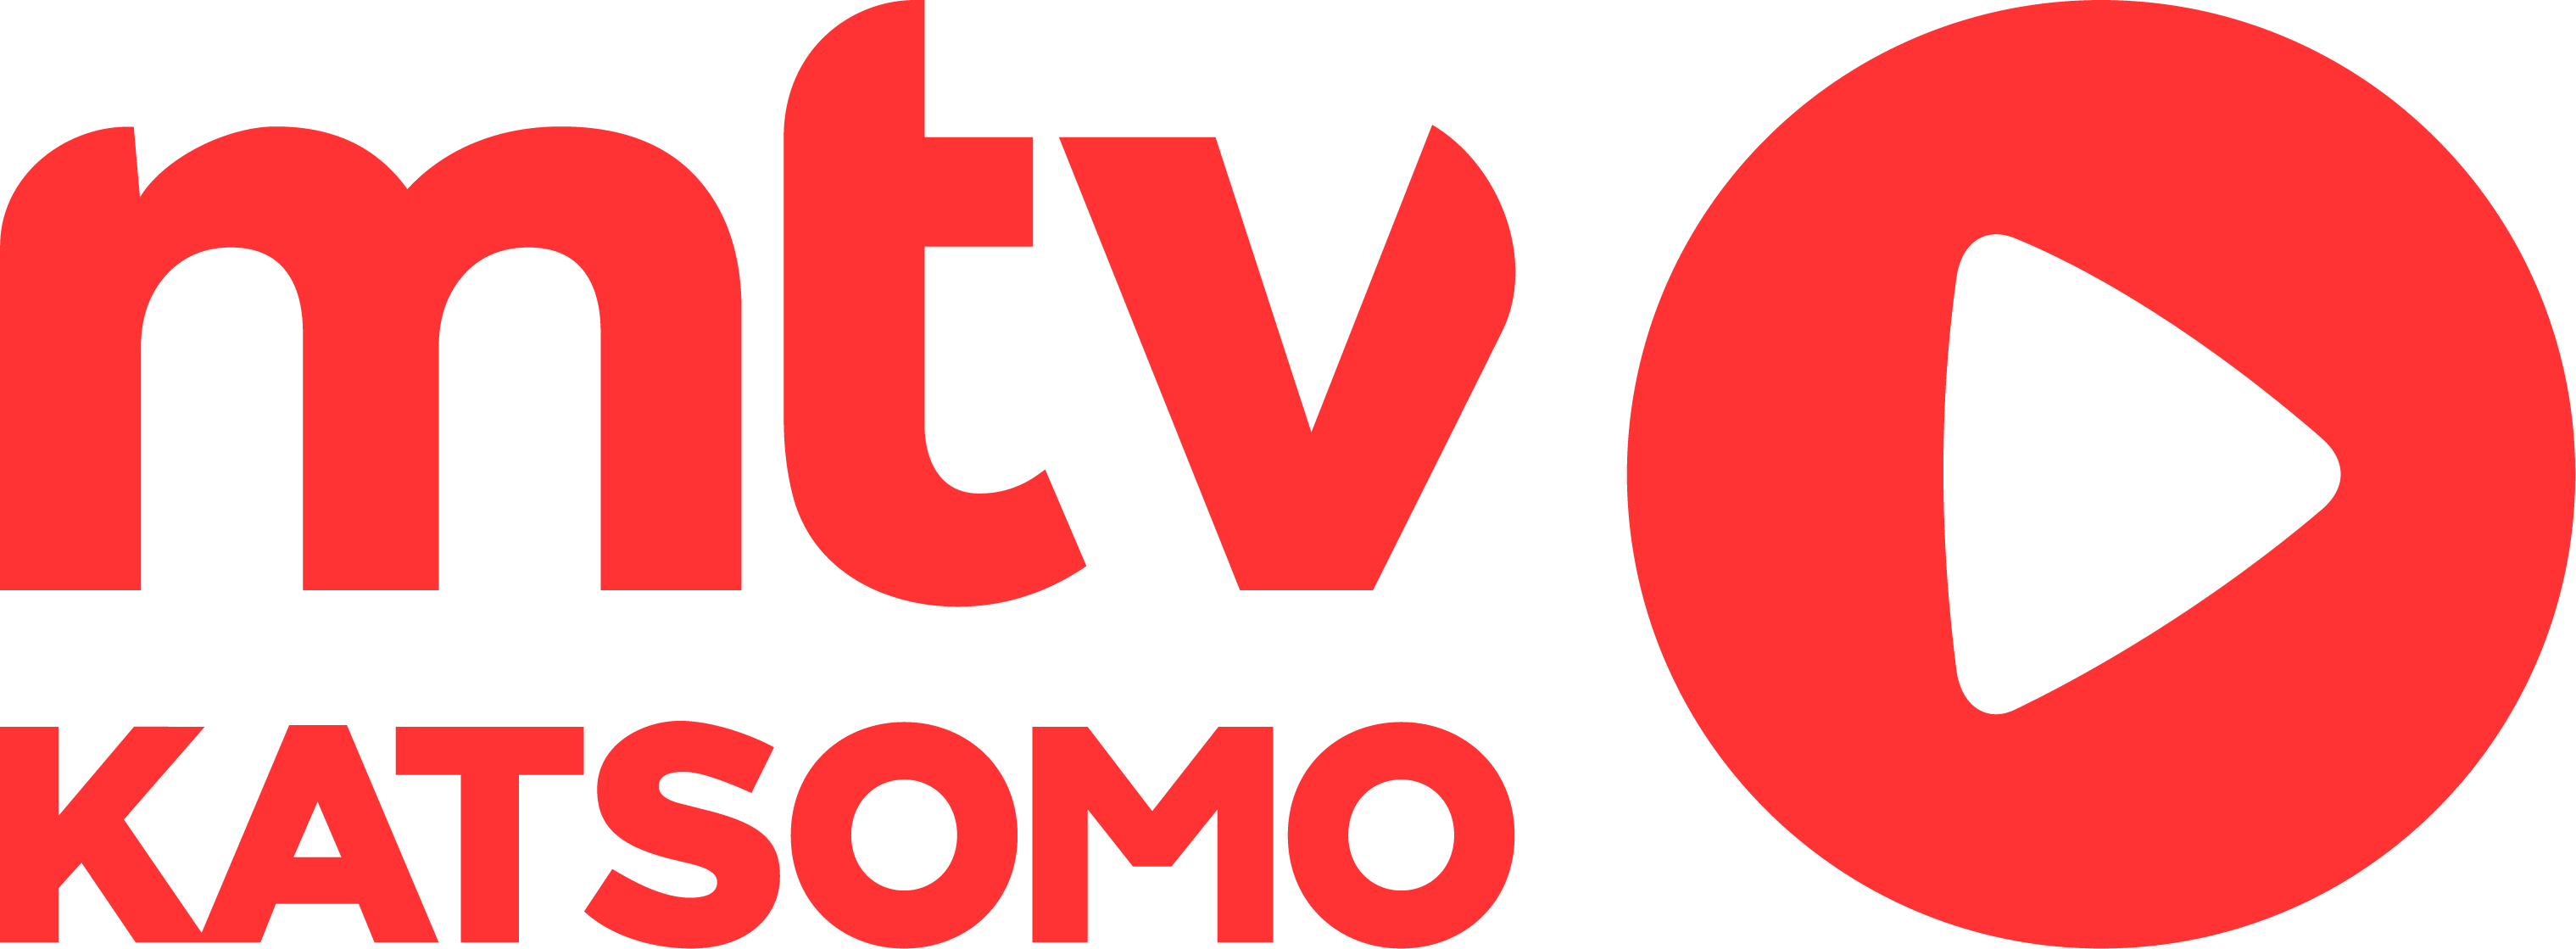 MTV kuunteli katsojiaan – mtv-palvelu on nyt MTV Katsomo - ePressi